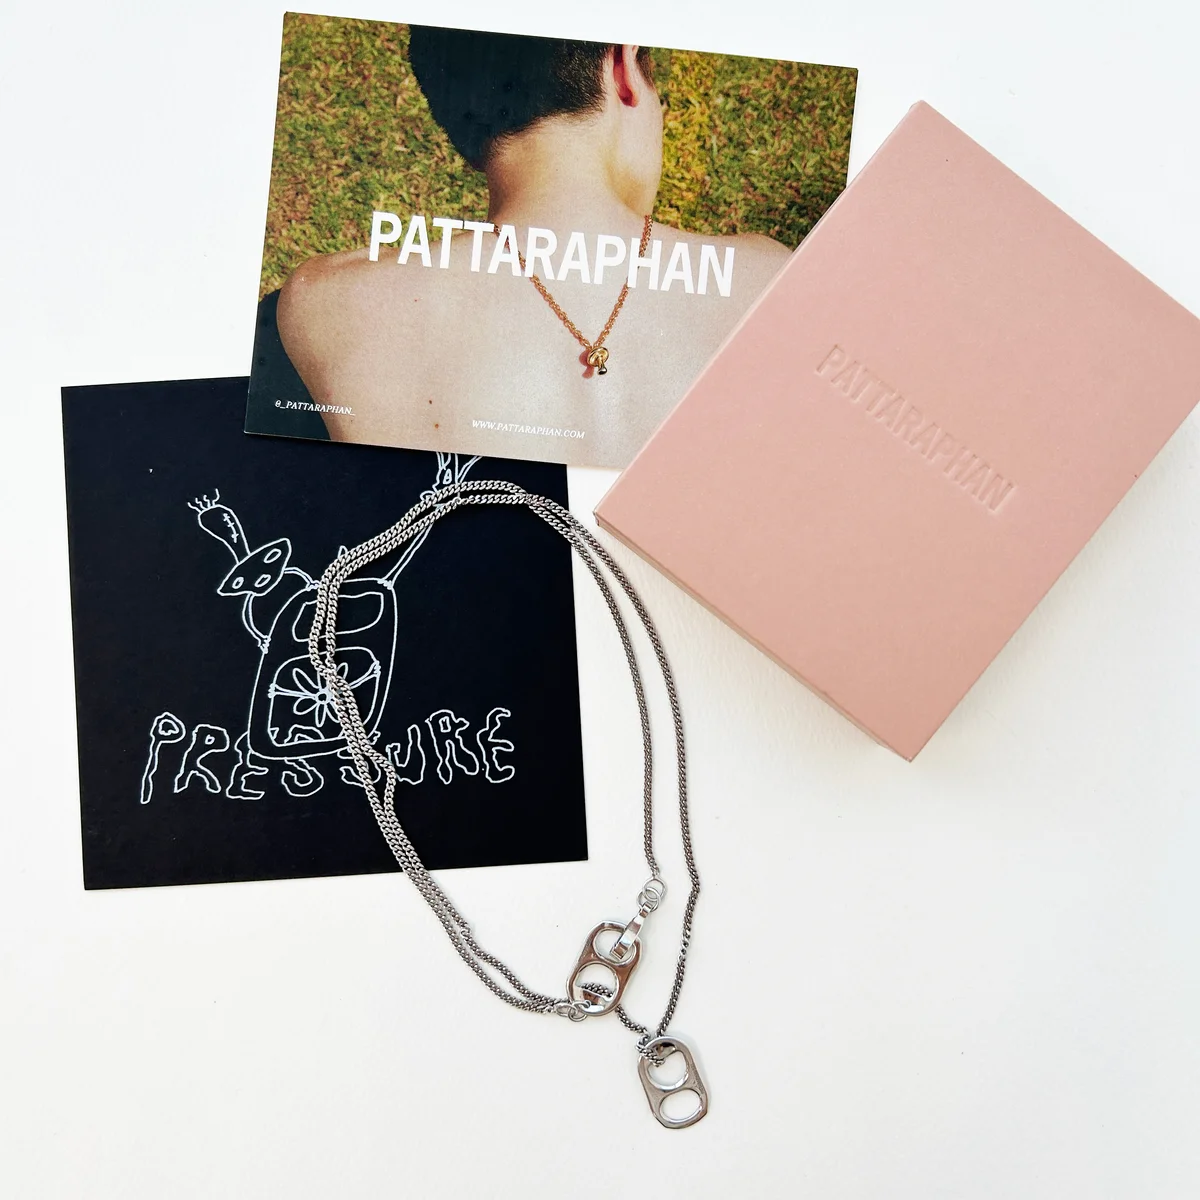 PATTARAPHANのネックレスとノベルティのポストカード